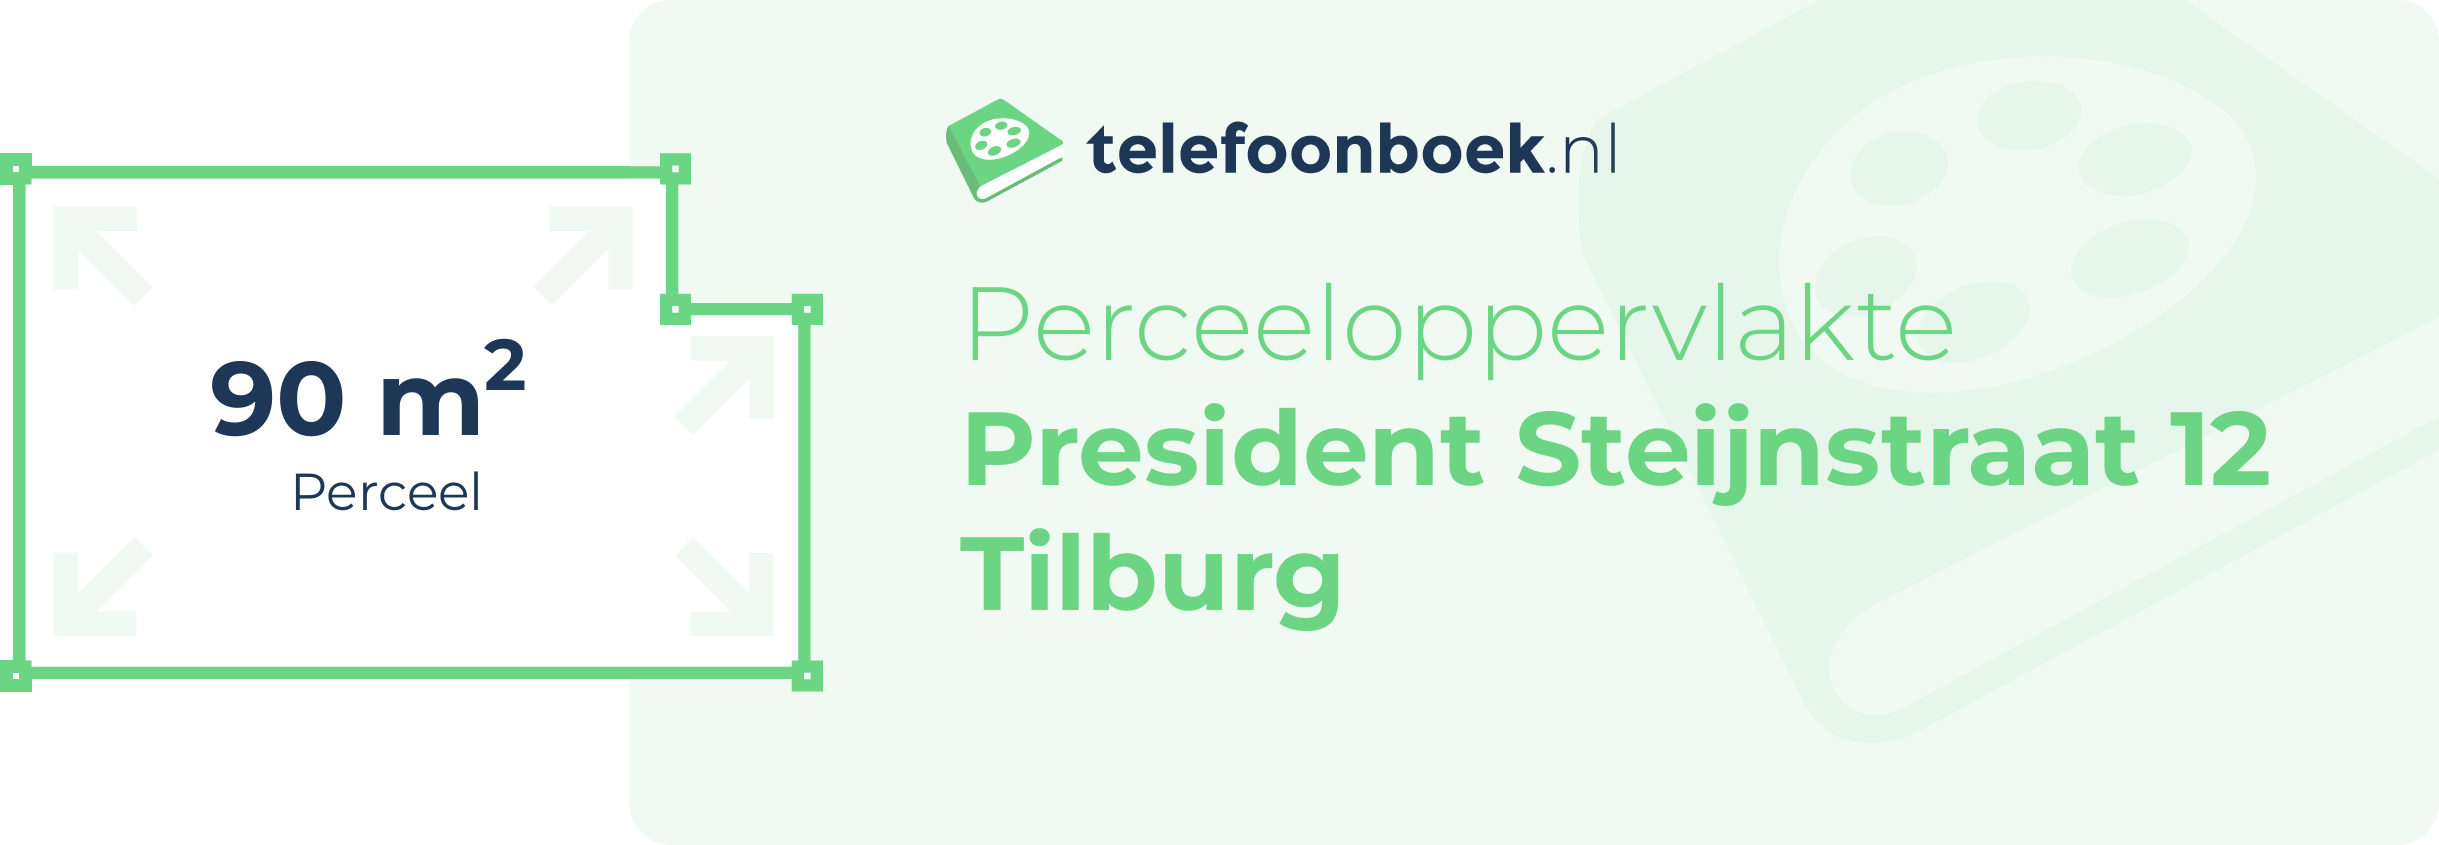 Perceeloppervlakte President Steijnstraat 12 Tilburg